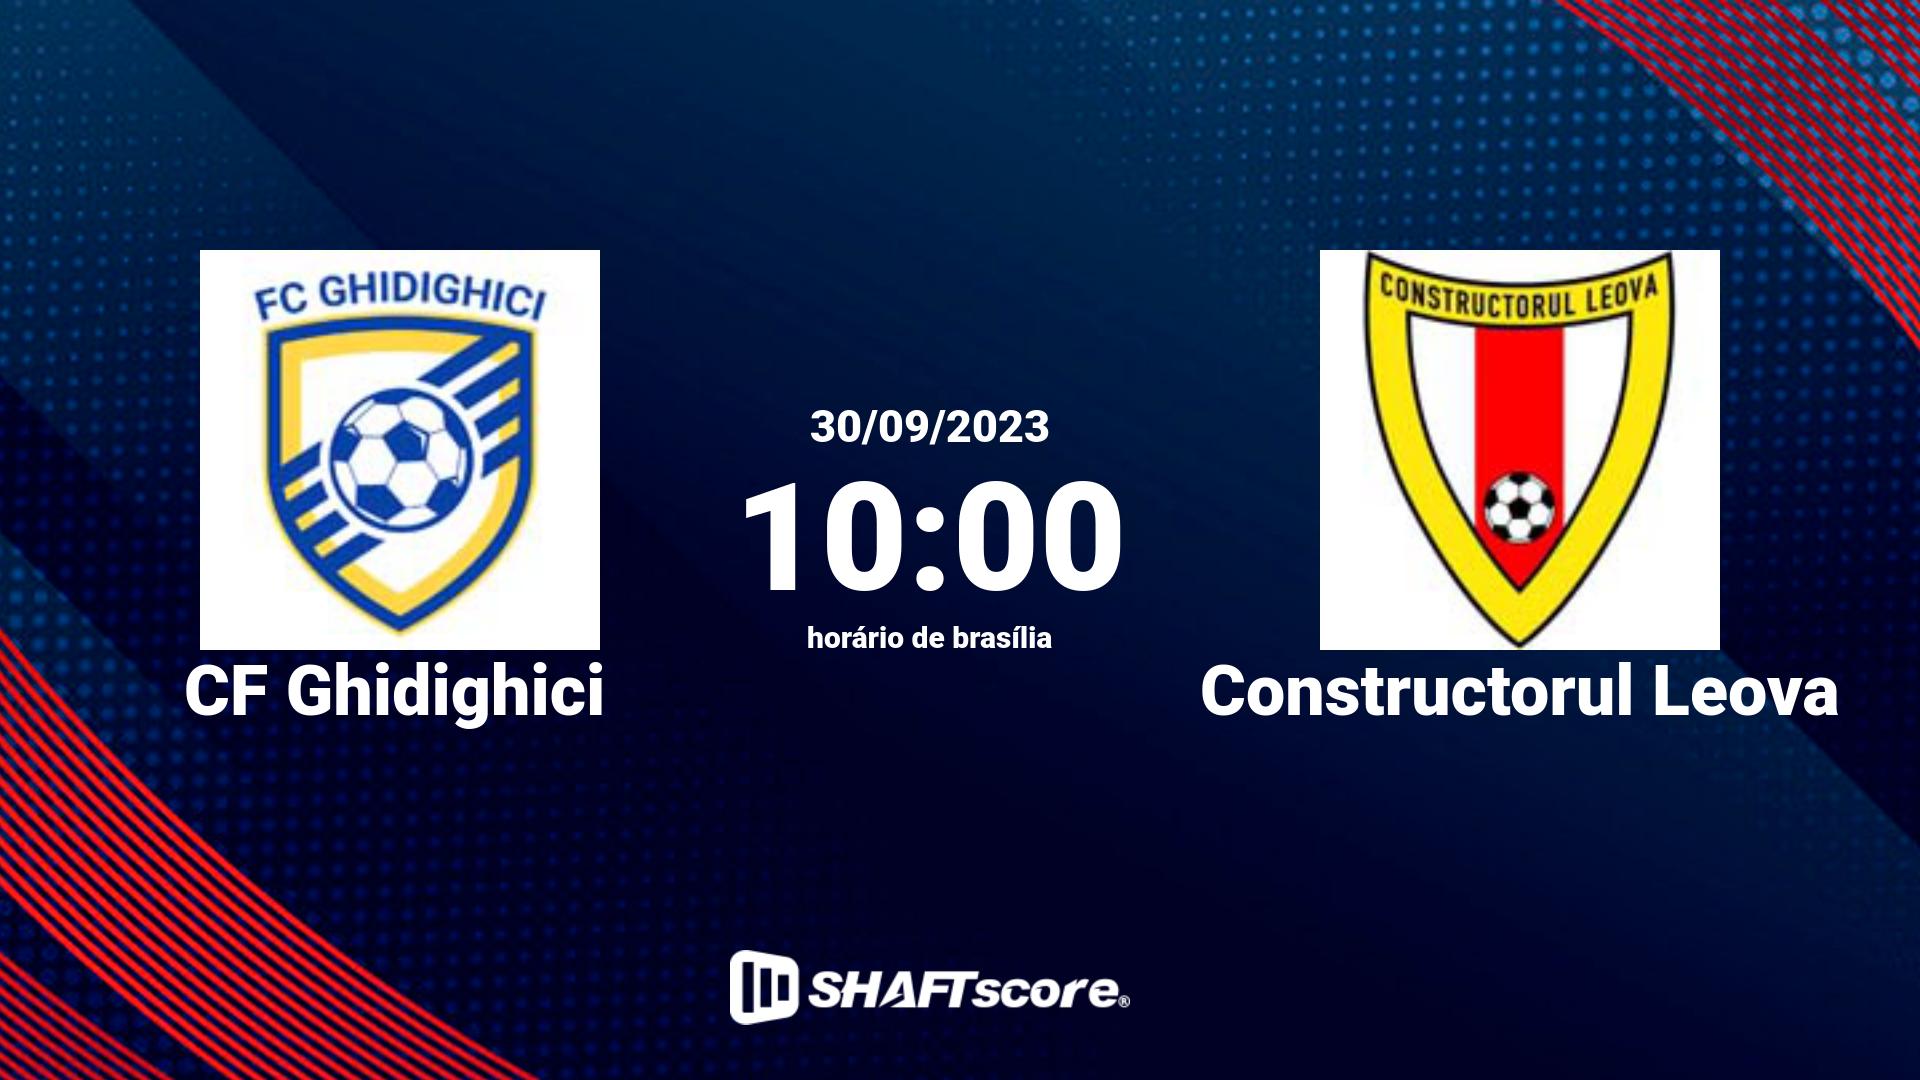 Estatísticas do jogo CF Ghidighici vs Constructorul Leova 30.09 10:00